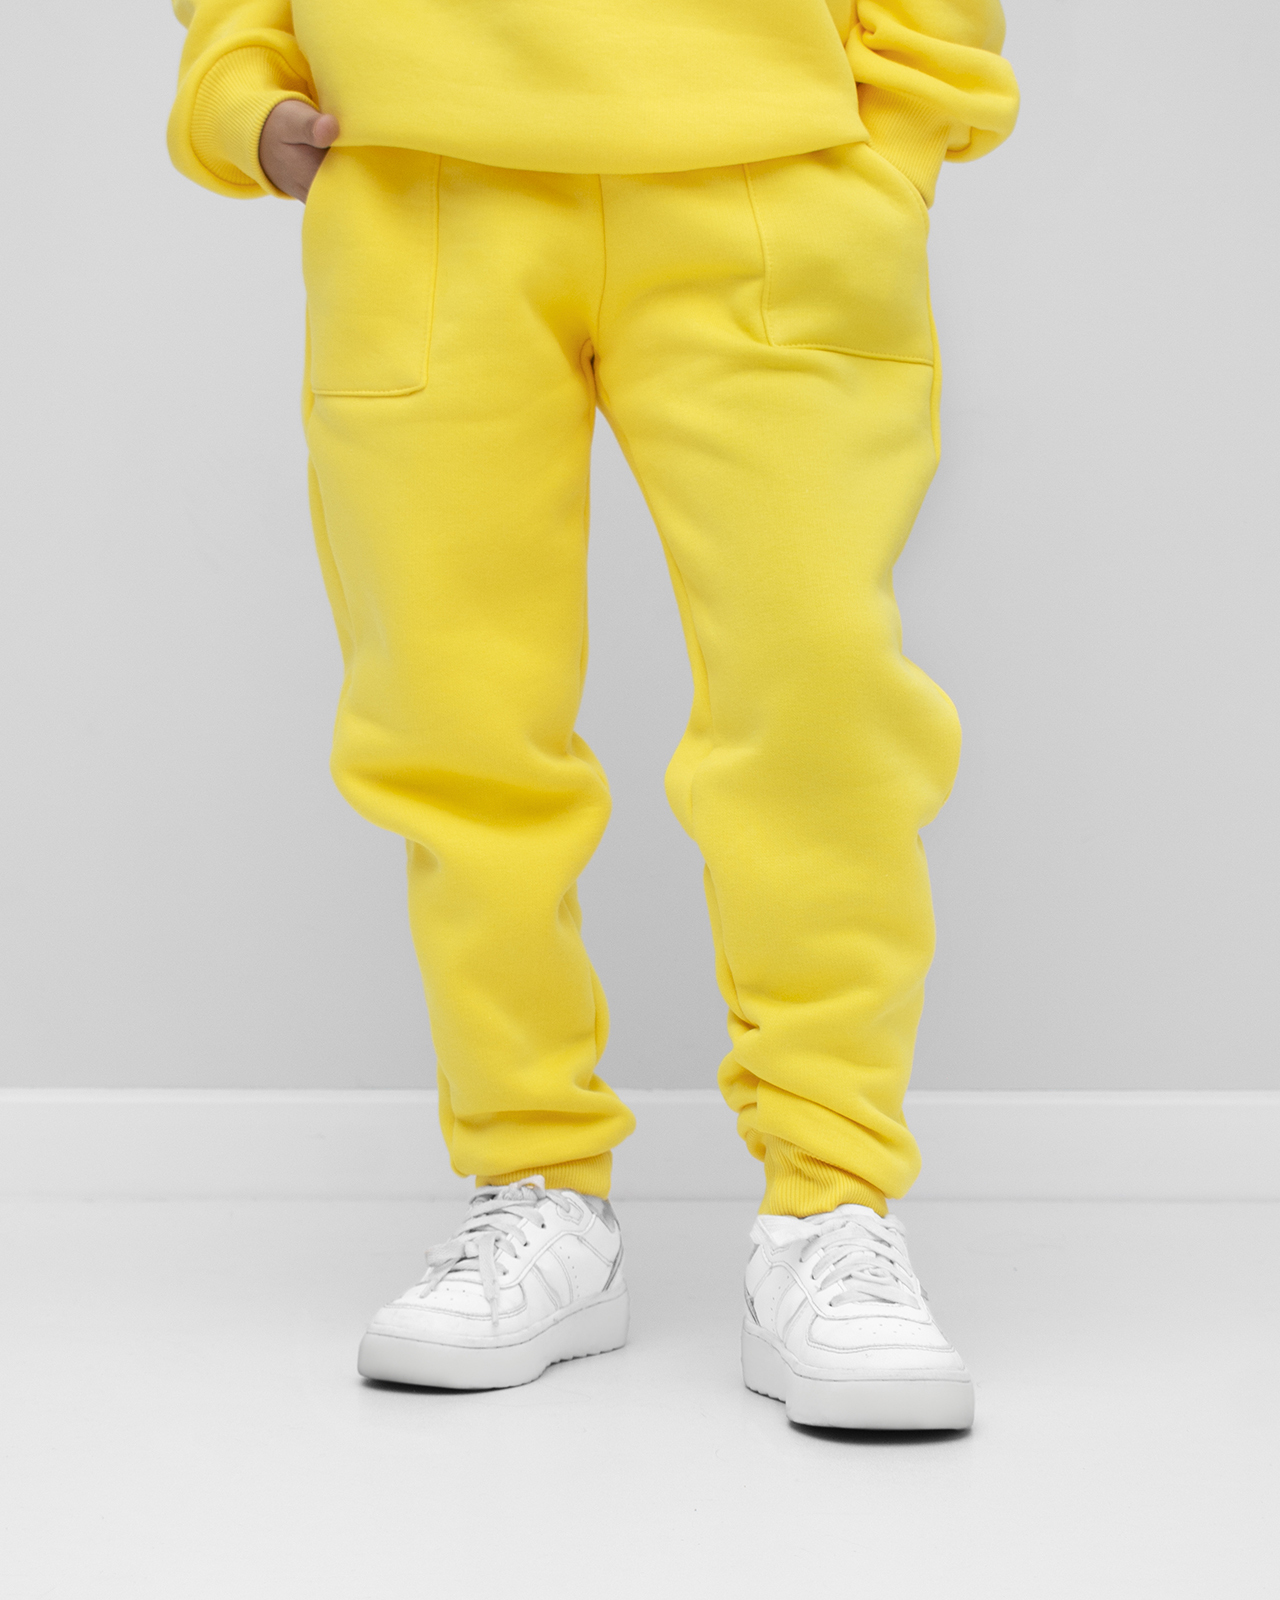 Дитячий утеплений костюм Жовтий